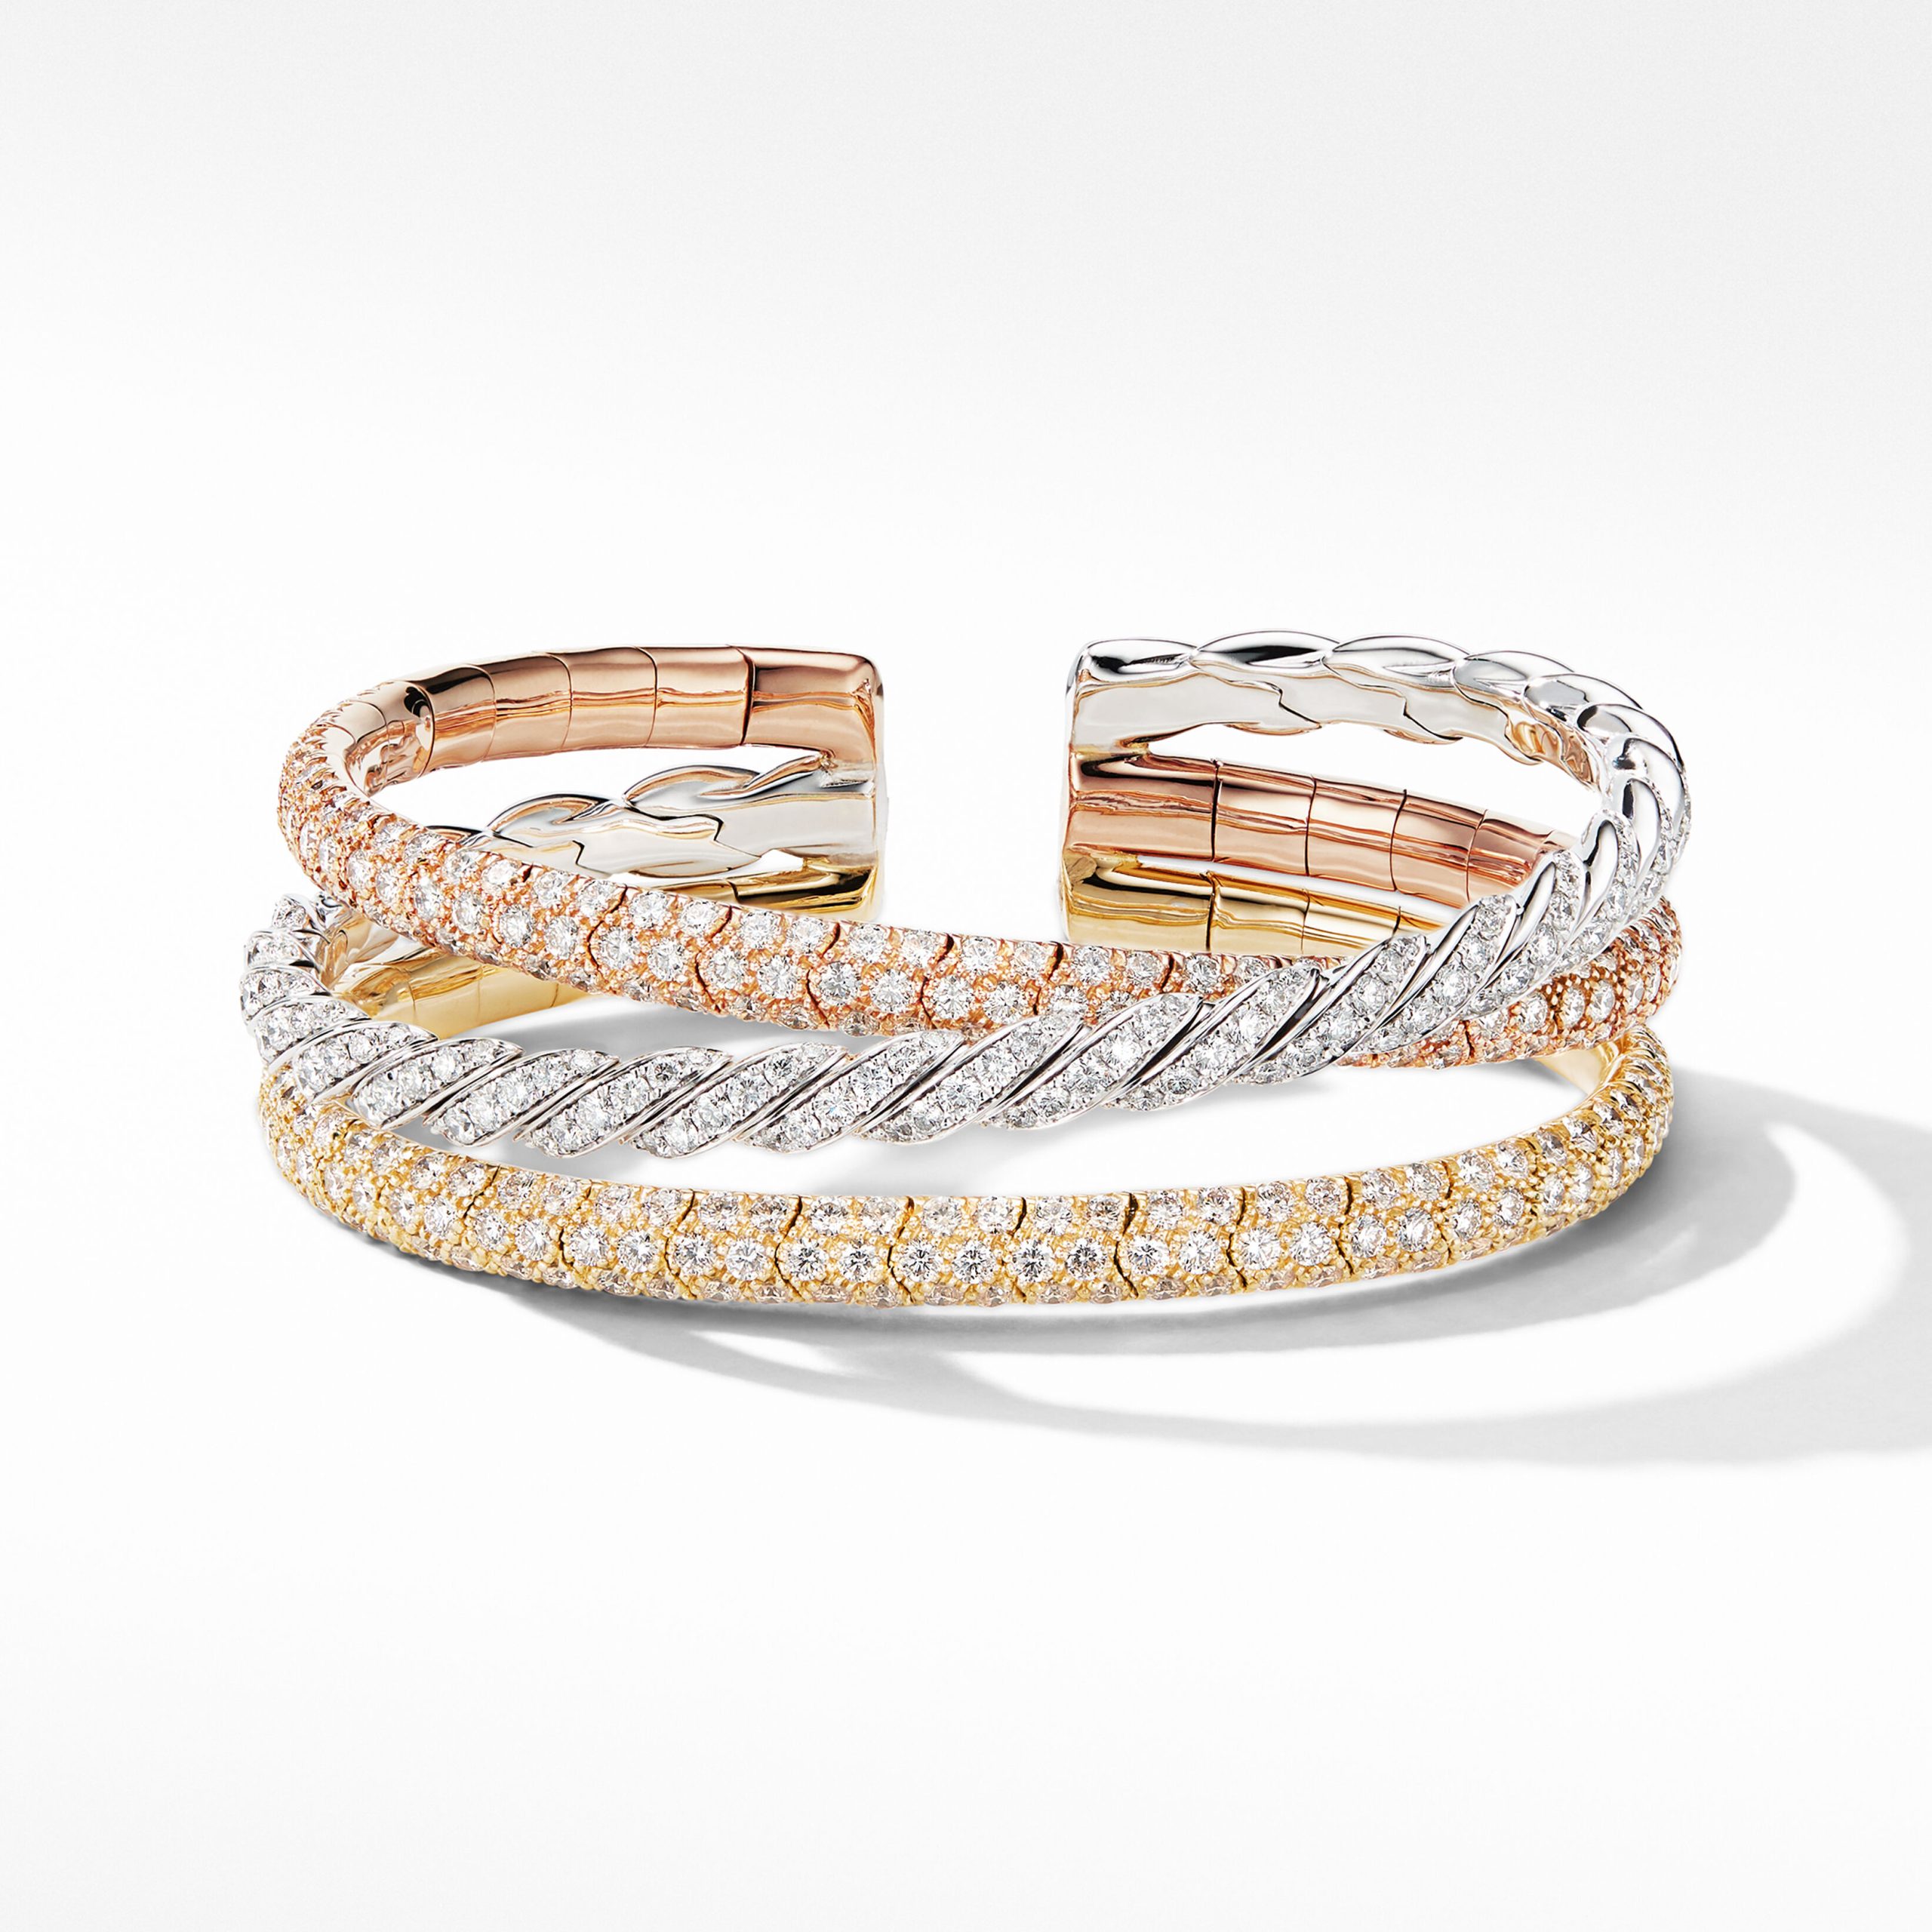 David Yurman Paveflex Five Row Bracelet, 73mm, Size M, with Diamonds in 18K Gold